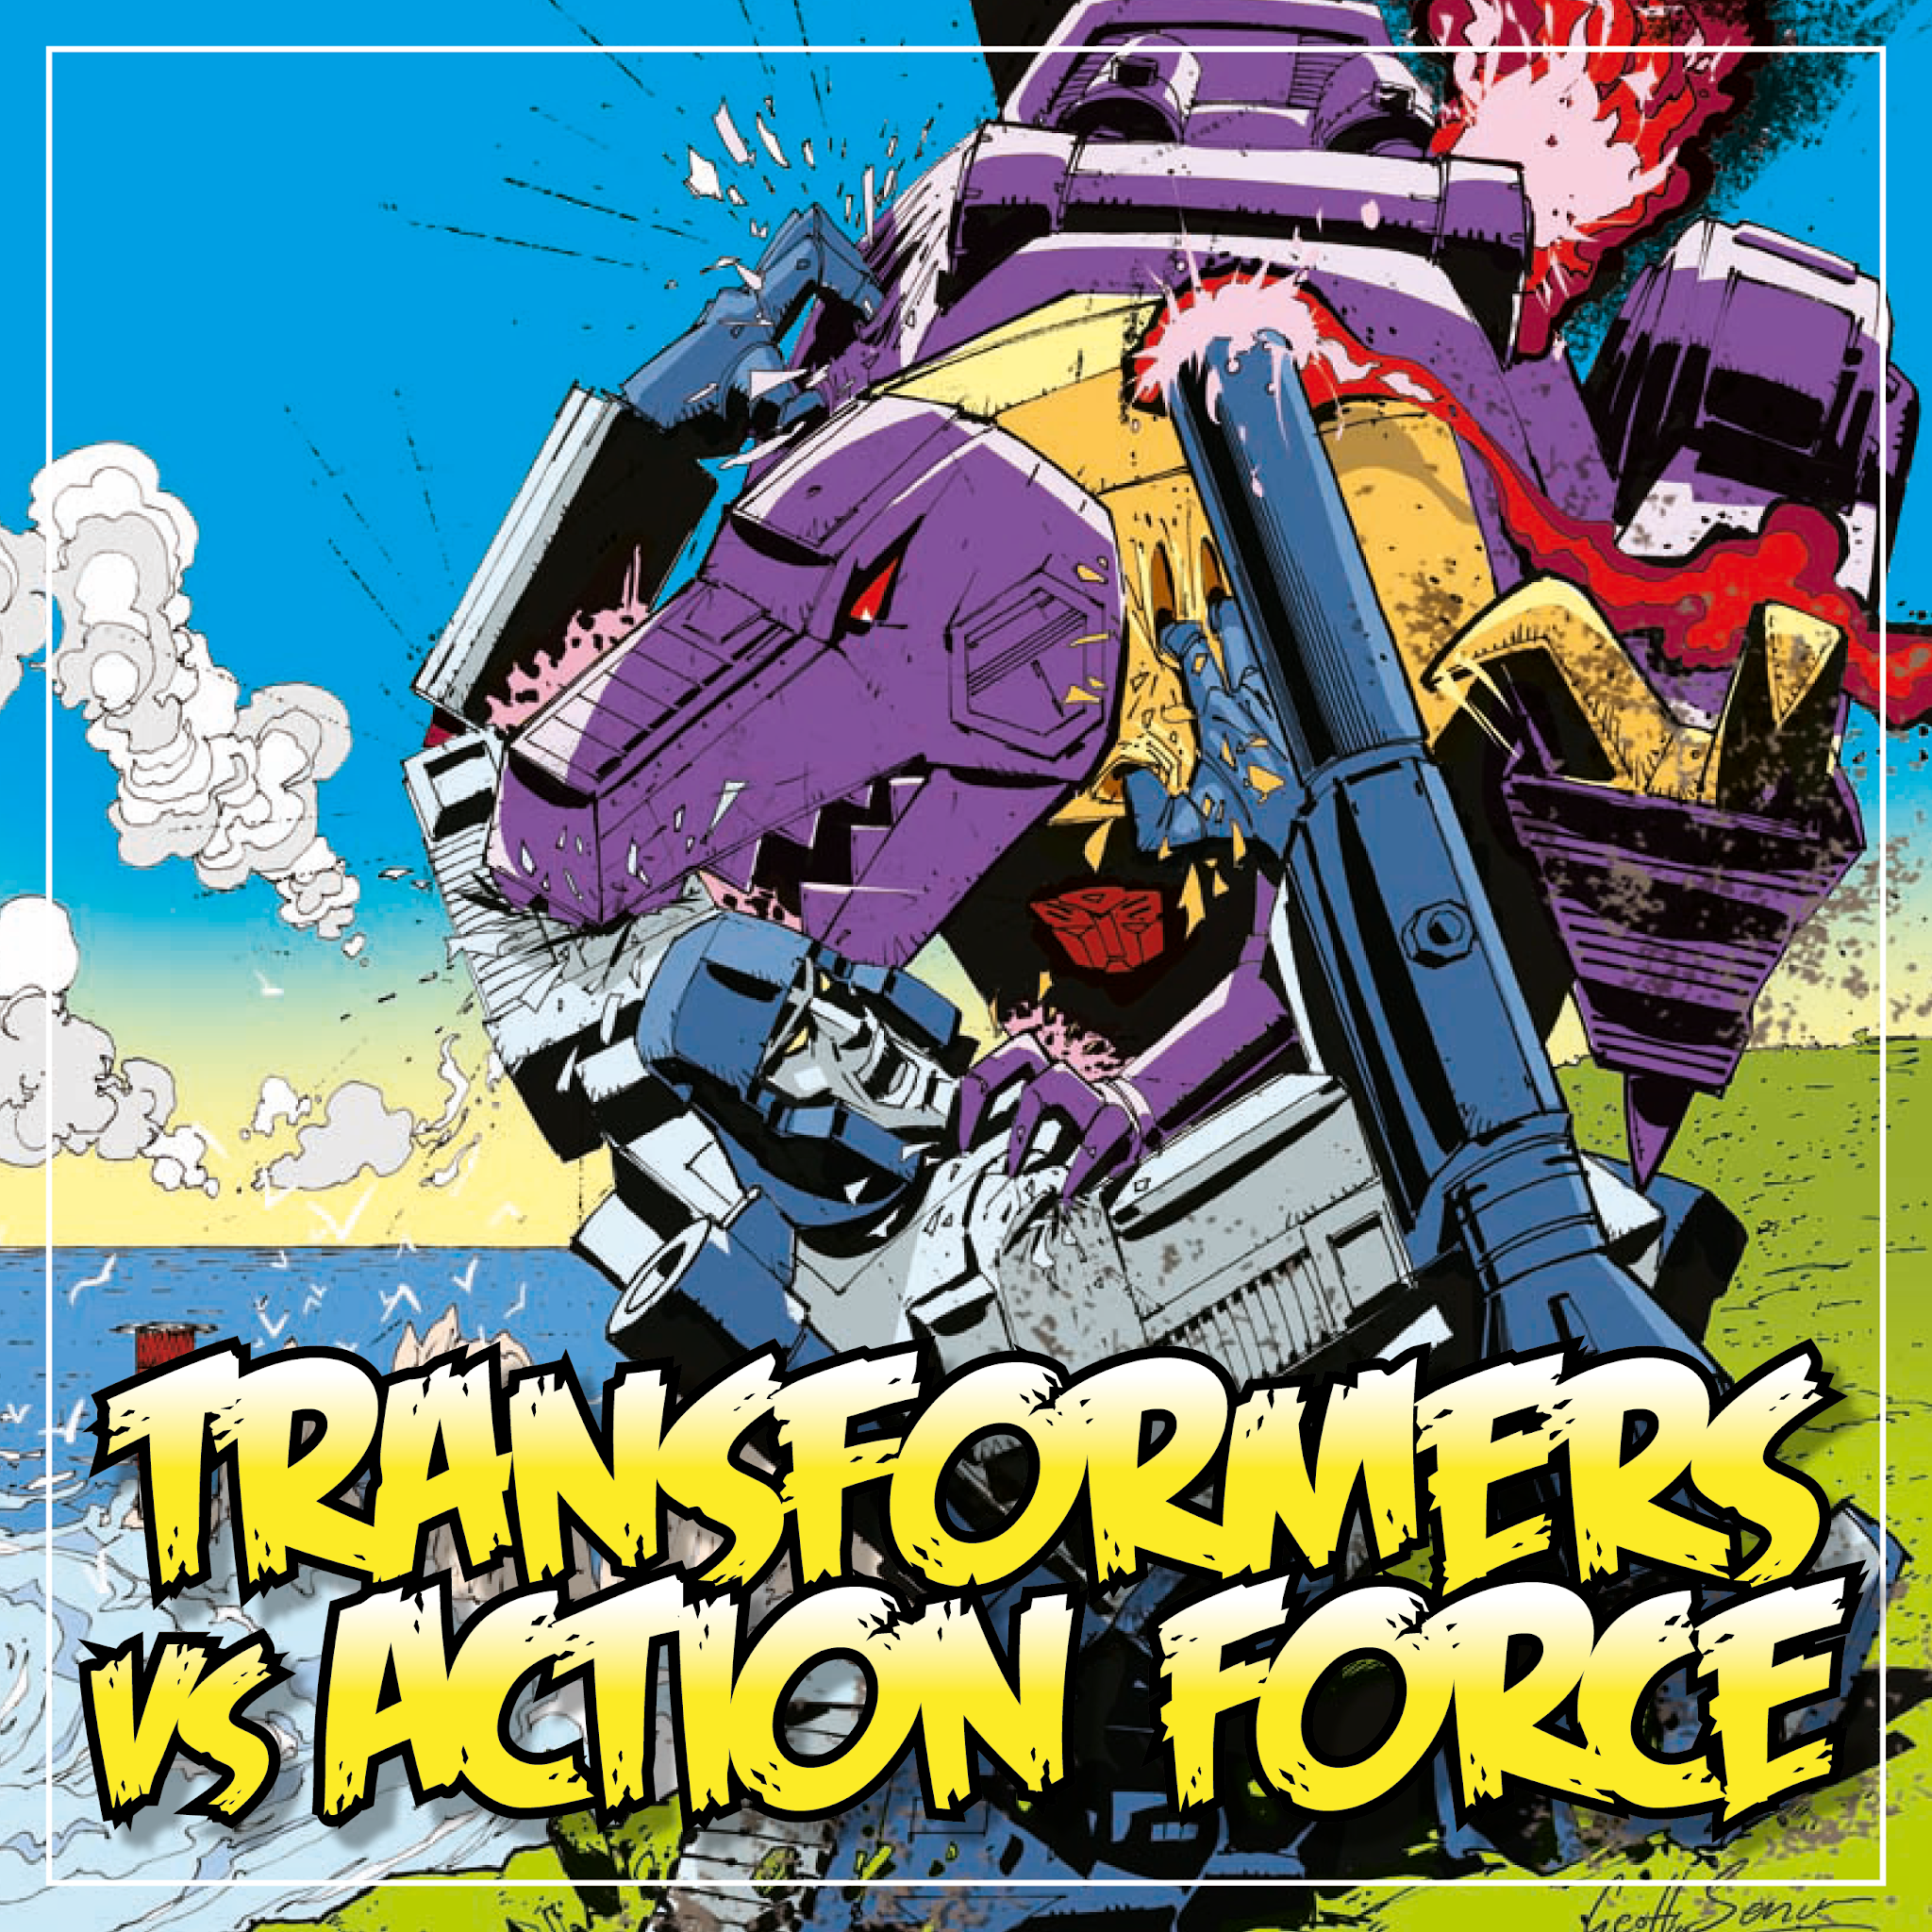 *** choisissez votre problème *** original transformers & action force MARVEL COMICS uk